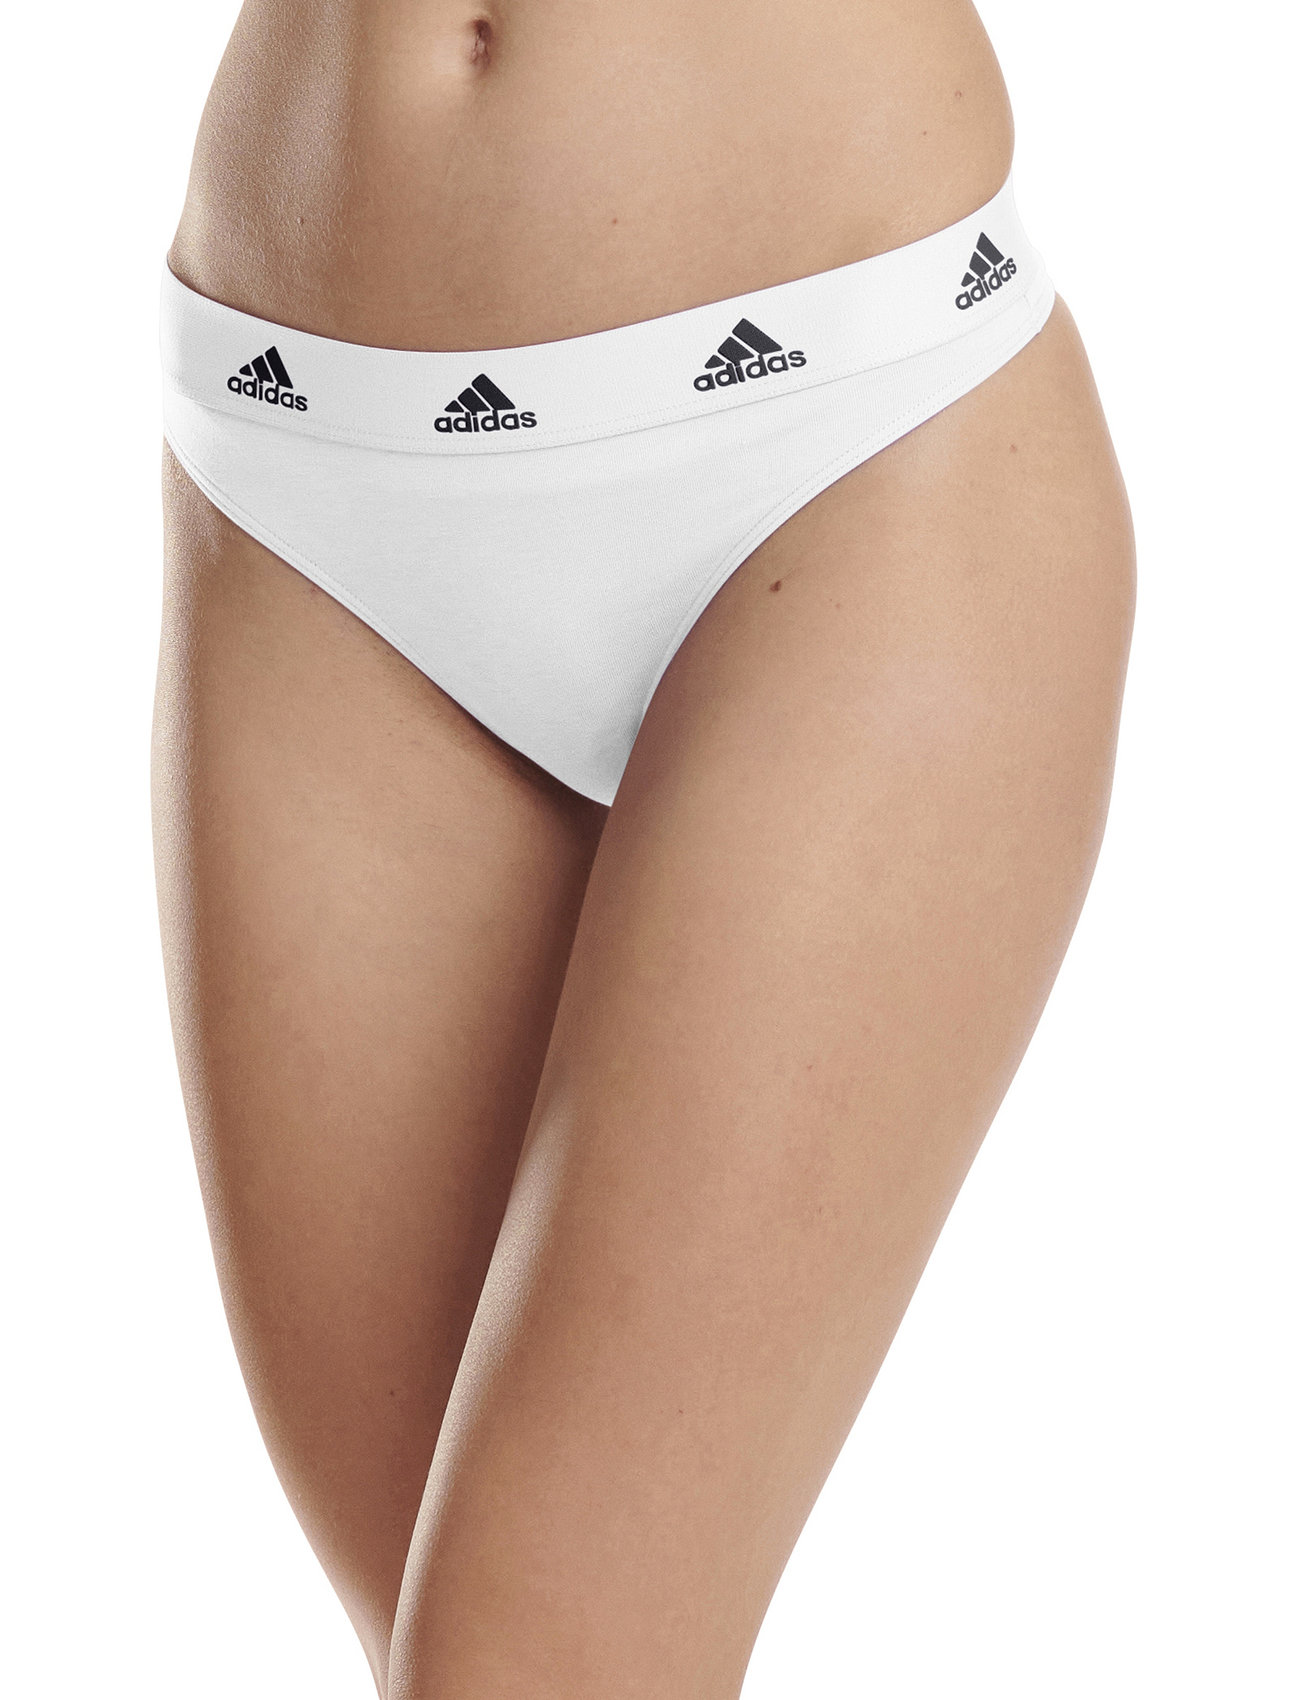 adidas Originals Underwear Thong – panties – shop at Booztlet